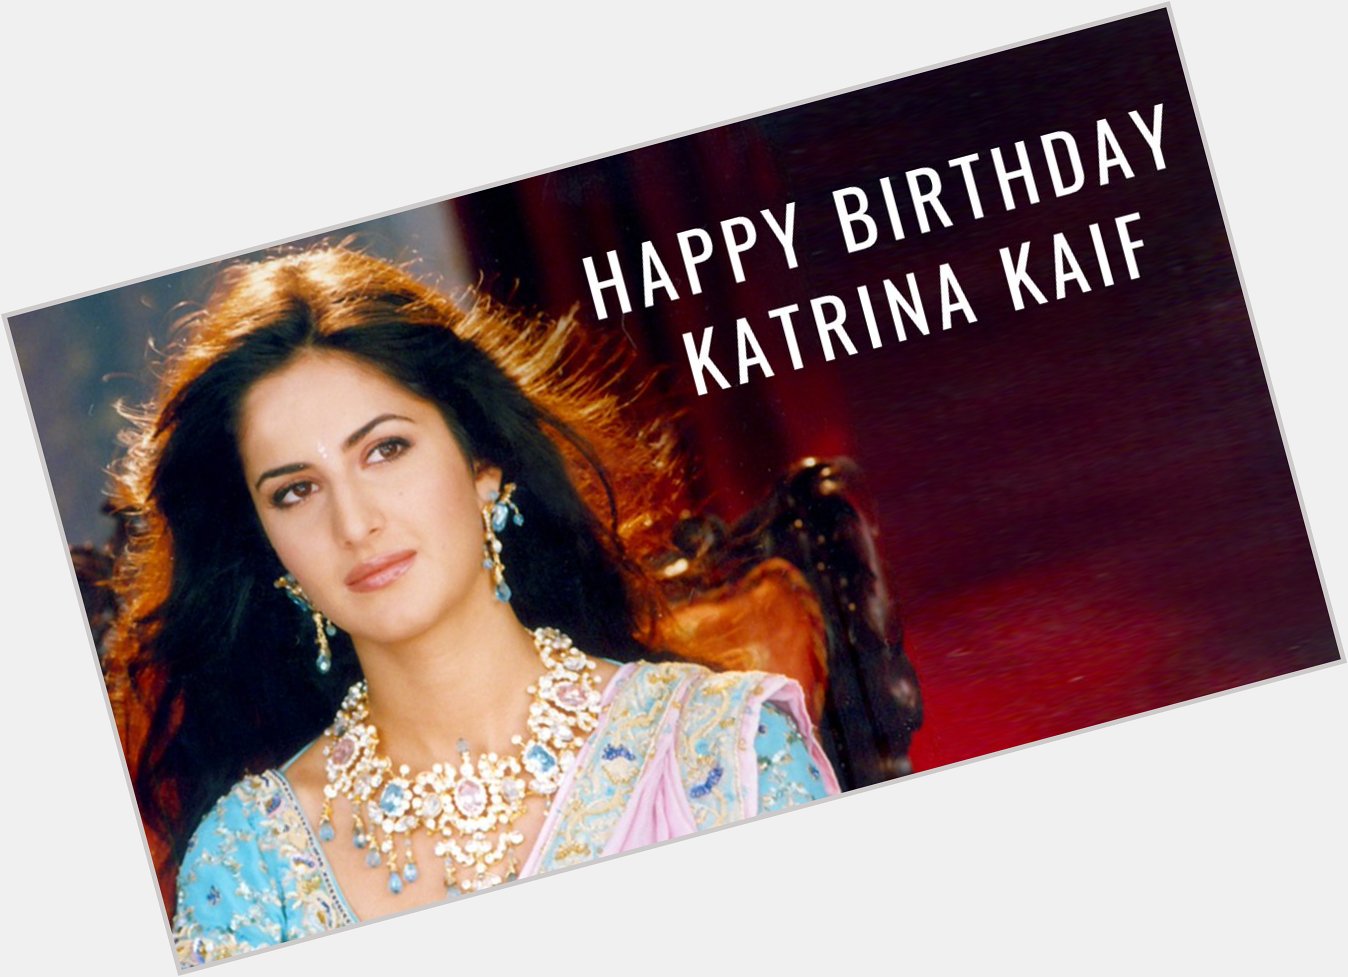 Wishing a very Happy Birthday to the ever beautiful Katrina Kaif! 